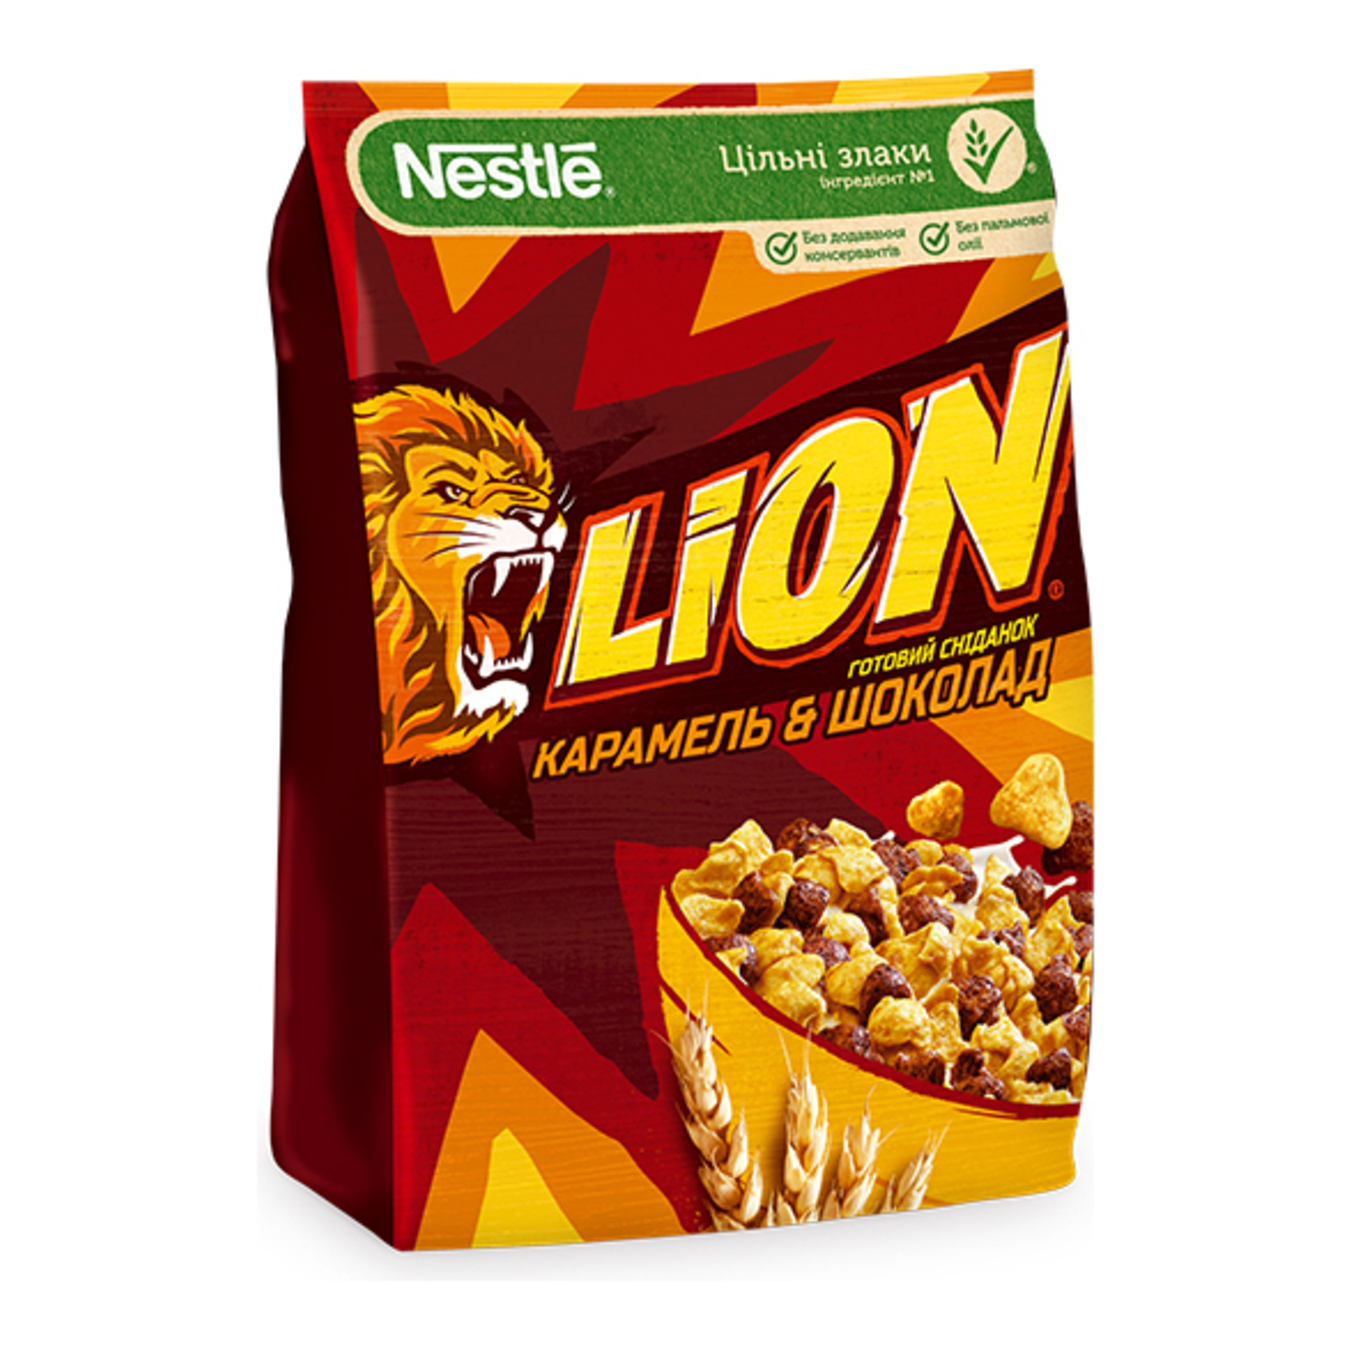 Сухой завтрак Nestlé LION 450г